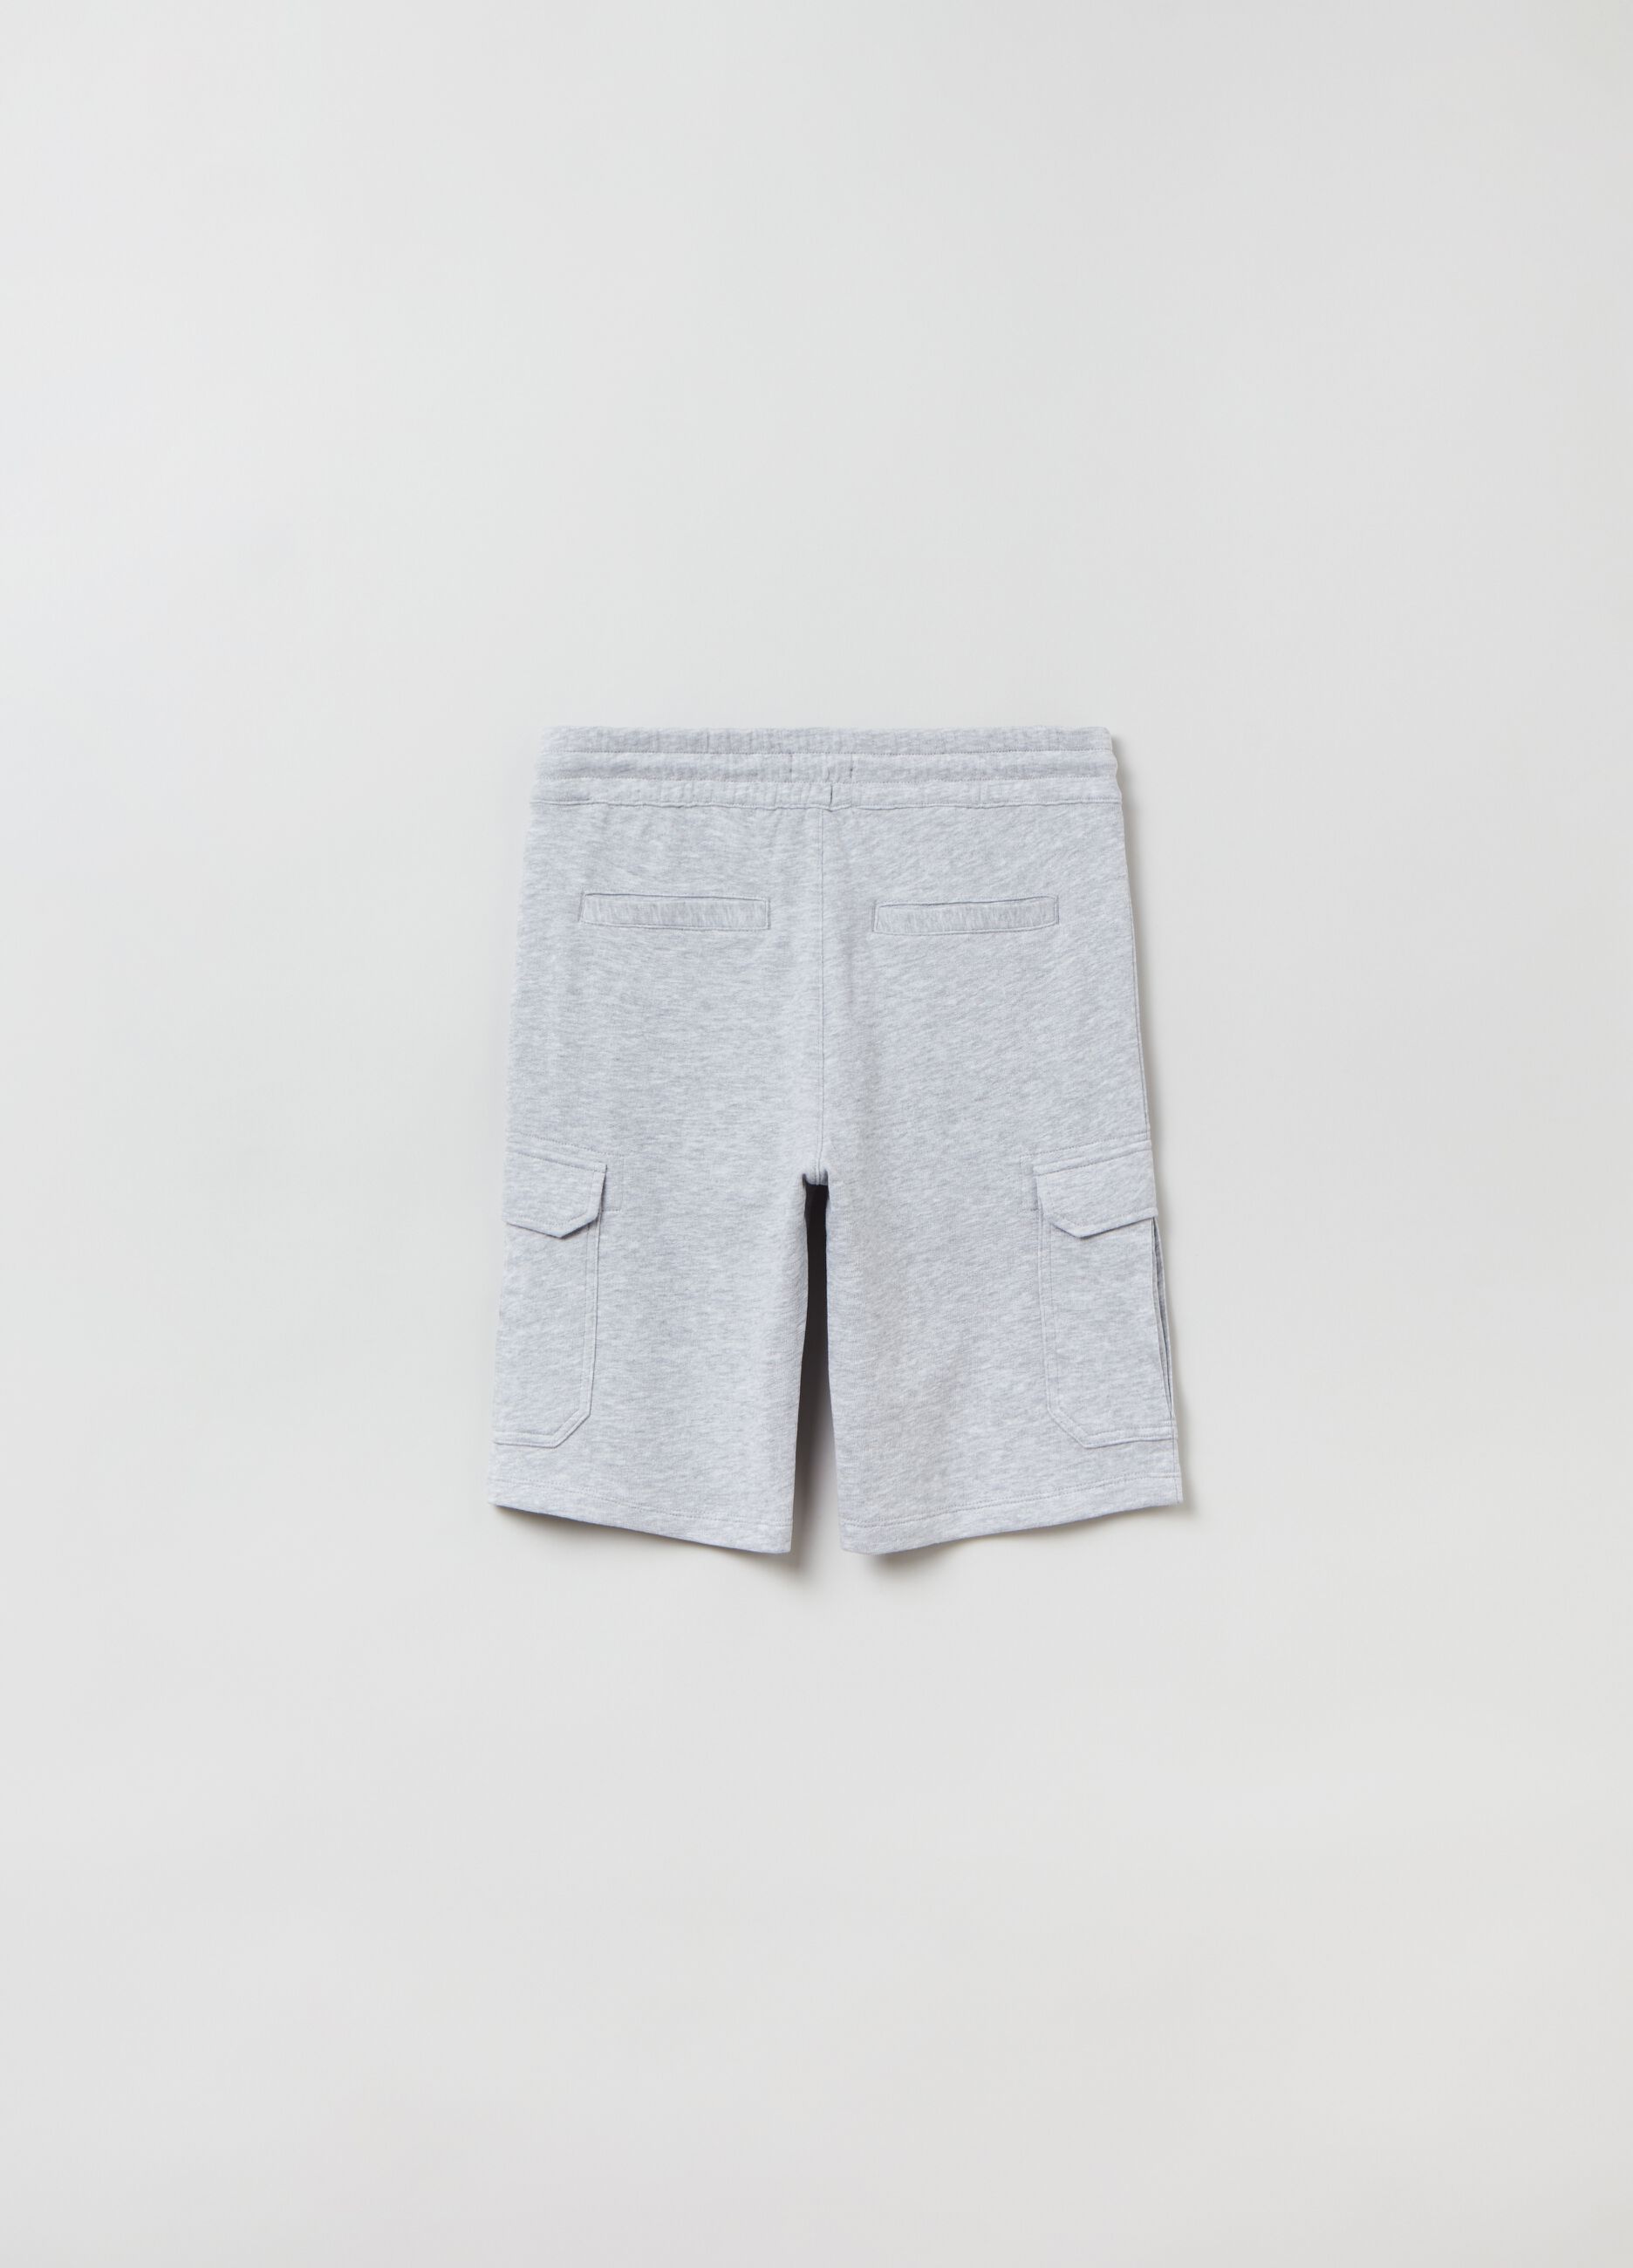 Bermuda shorts with drawstring and pockets